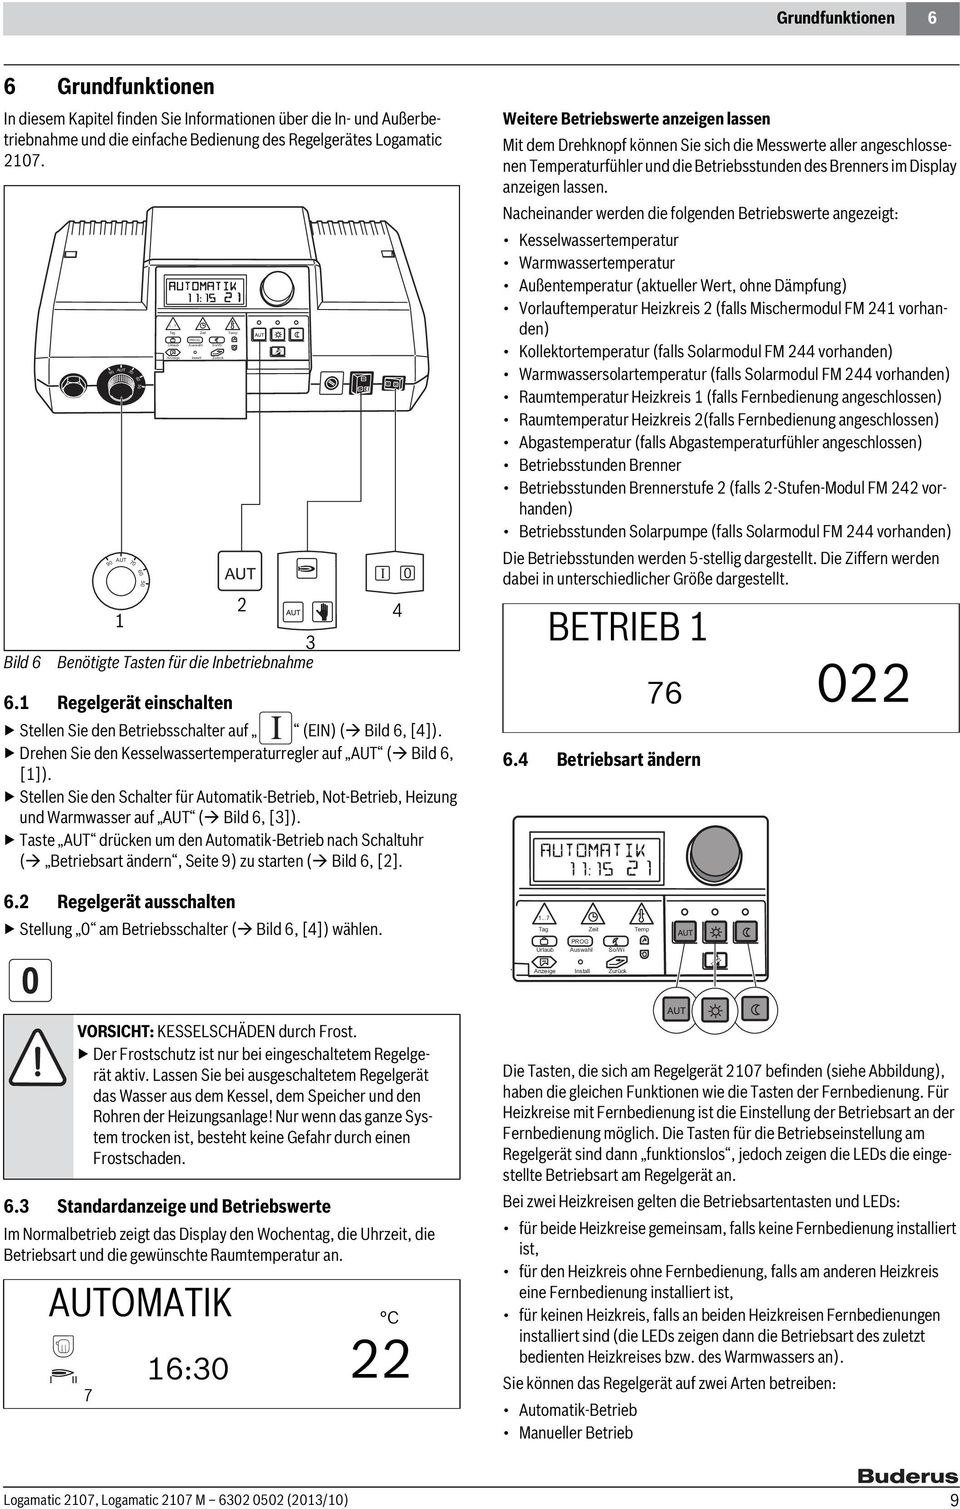 Drehen Sie den Kesselwassertemperaturregler auf AUT ( Bild 6, [1]). Stellen Sie den Schalter für Automatik-Betrieb, Not-Betrieb, Heizung und Warmwasser auf AUT ( Bild 6, [3]).